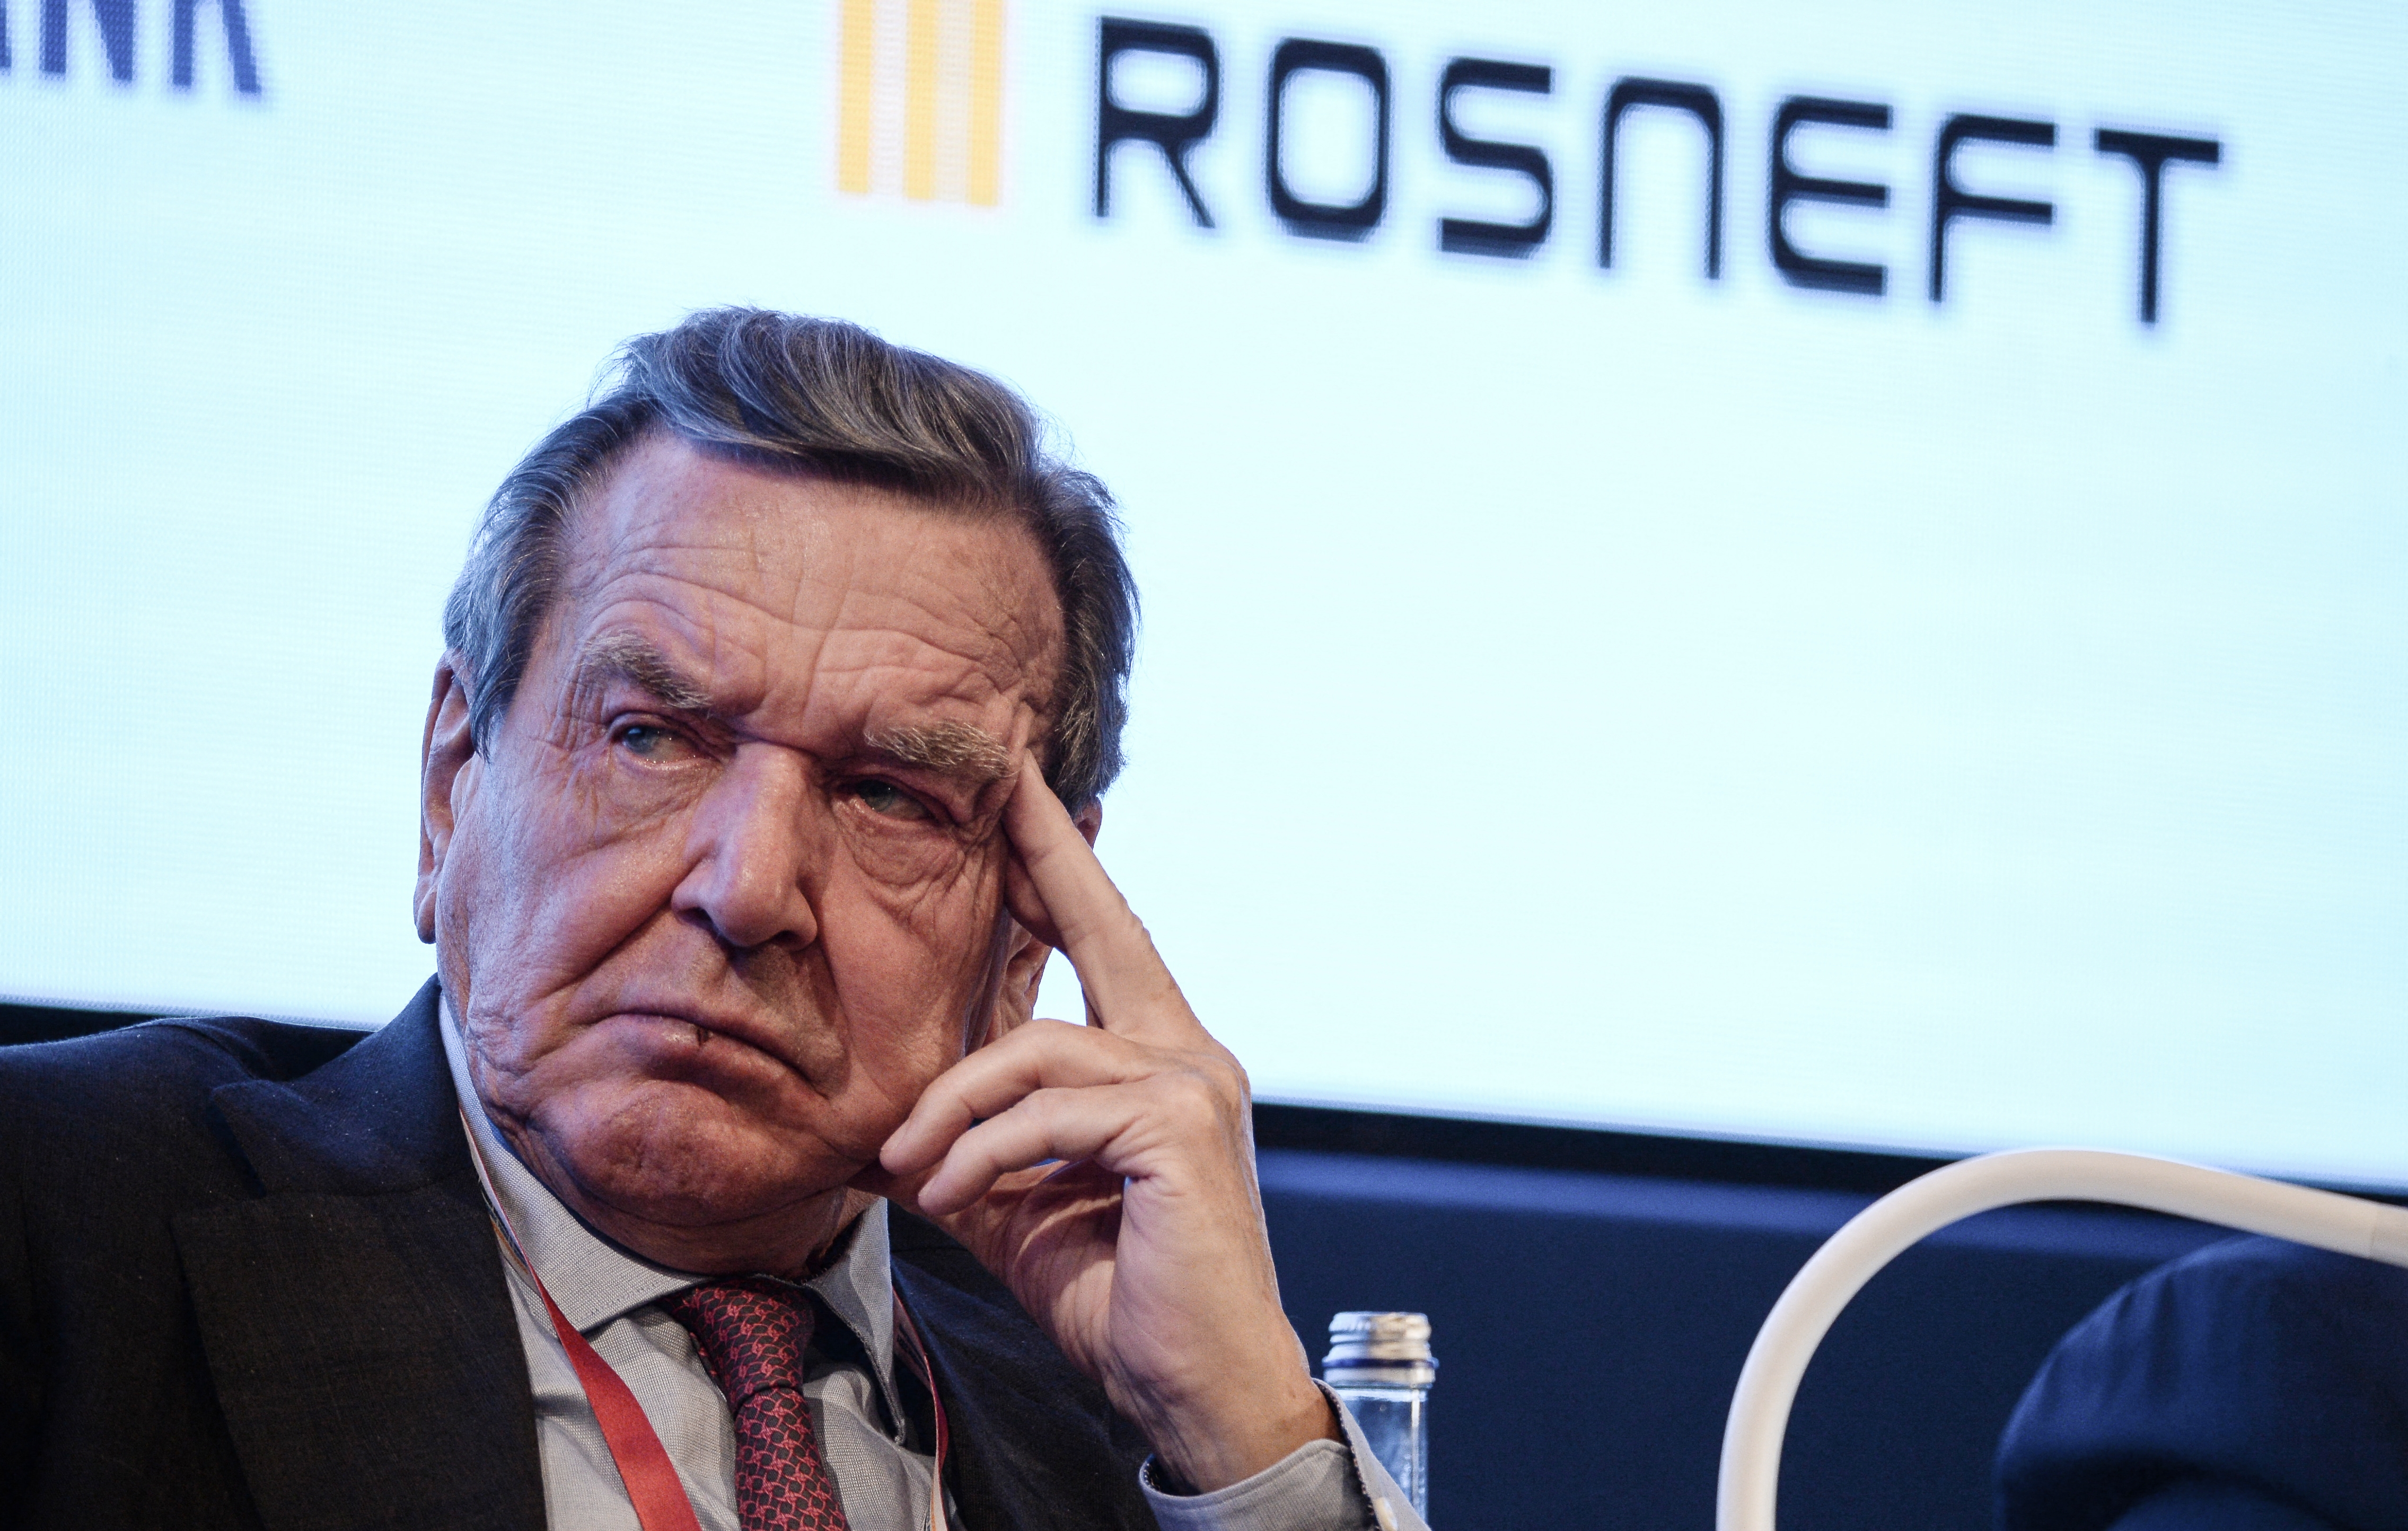 Gerhard Schrödert és Karin Kneissl volt osztrák külügyminisztert is szankcionálná az EP, mivel pénzt kaptak az oroszoktól